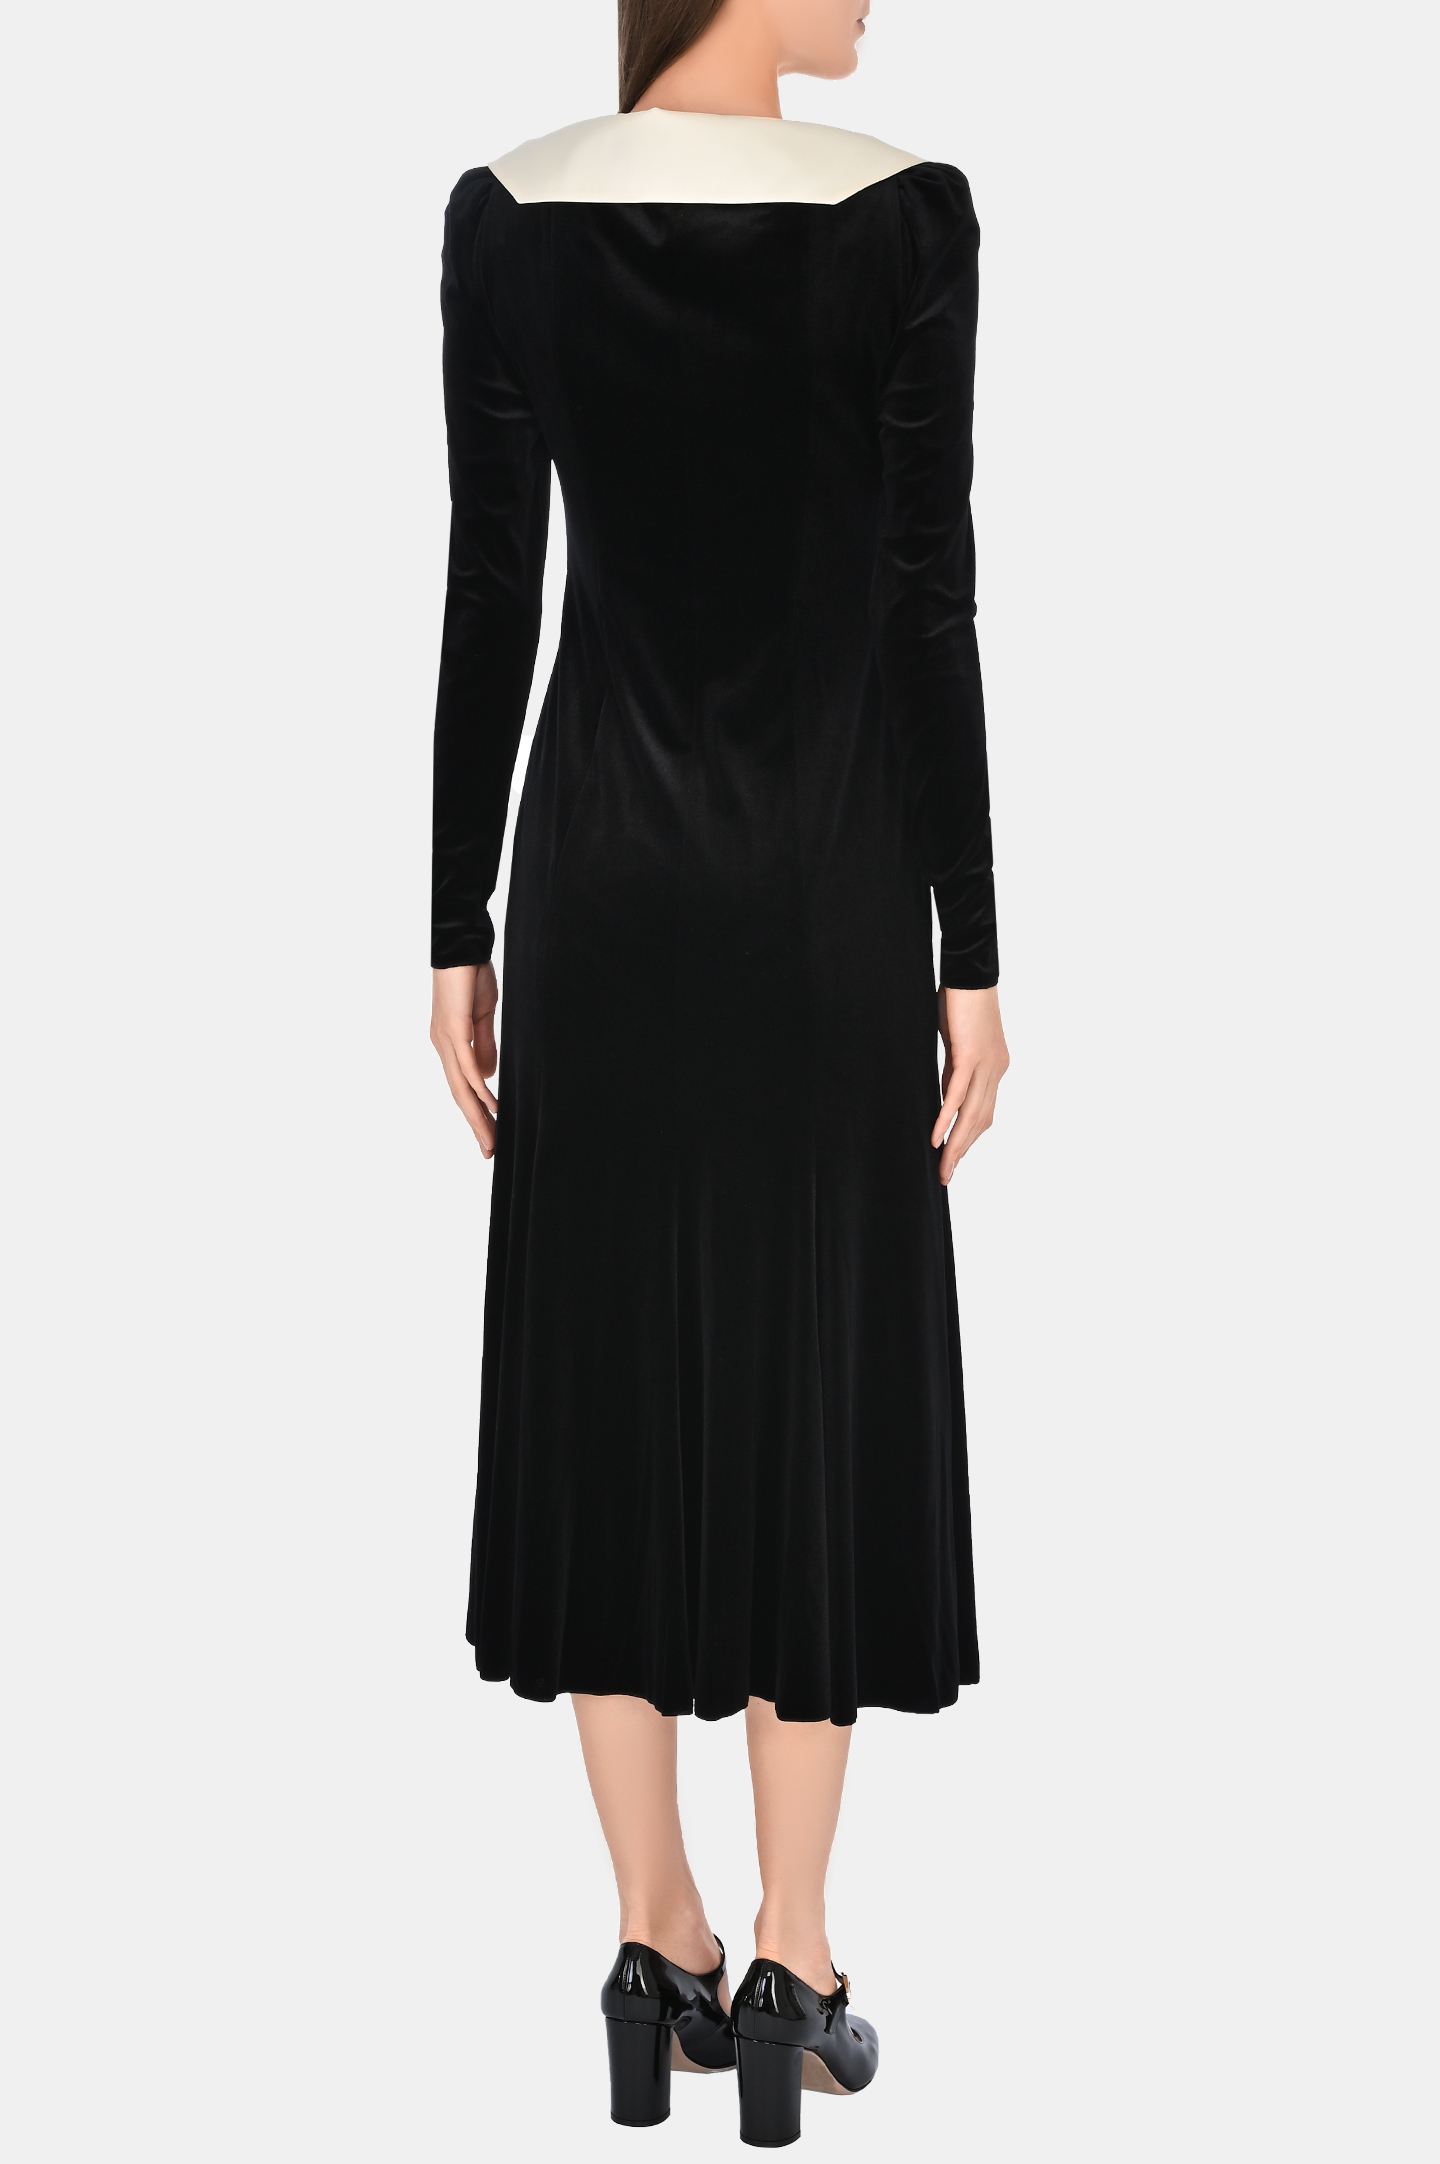 Платье PHILOSOPHY DI LORENZO SERAFINI A0455 5728, цвет: Черный, Женский